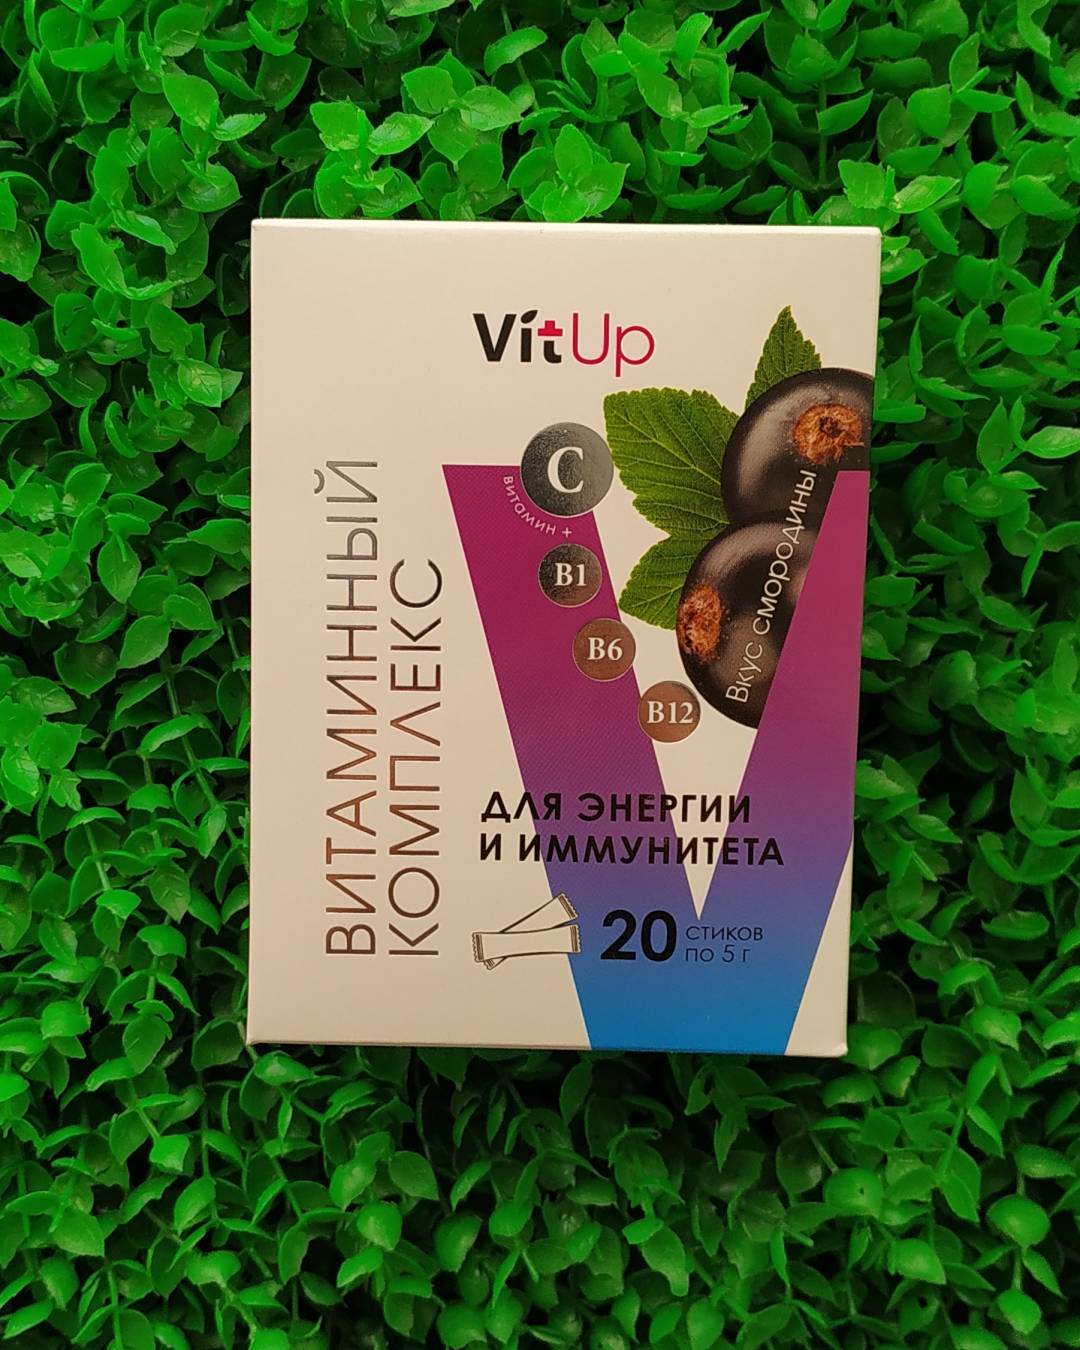 Купить онлайн БАД Витаминный комплекс источник энергии и иммунитета VitUp, со вкусом черной смородины в интернет-магазине Беришка с доставкой по Хабаровску и по России недорого.